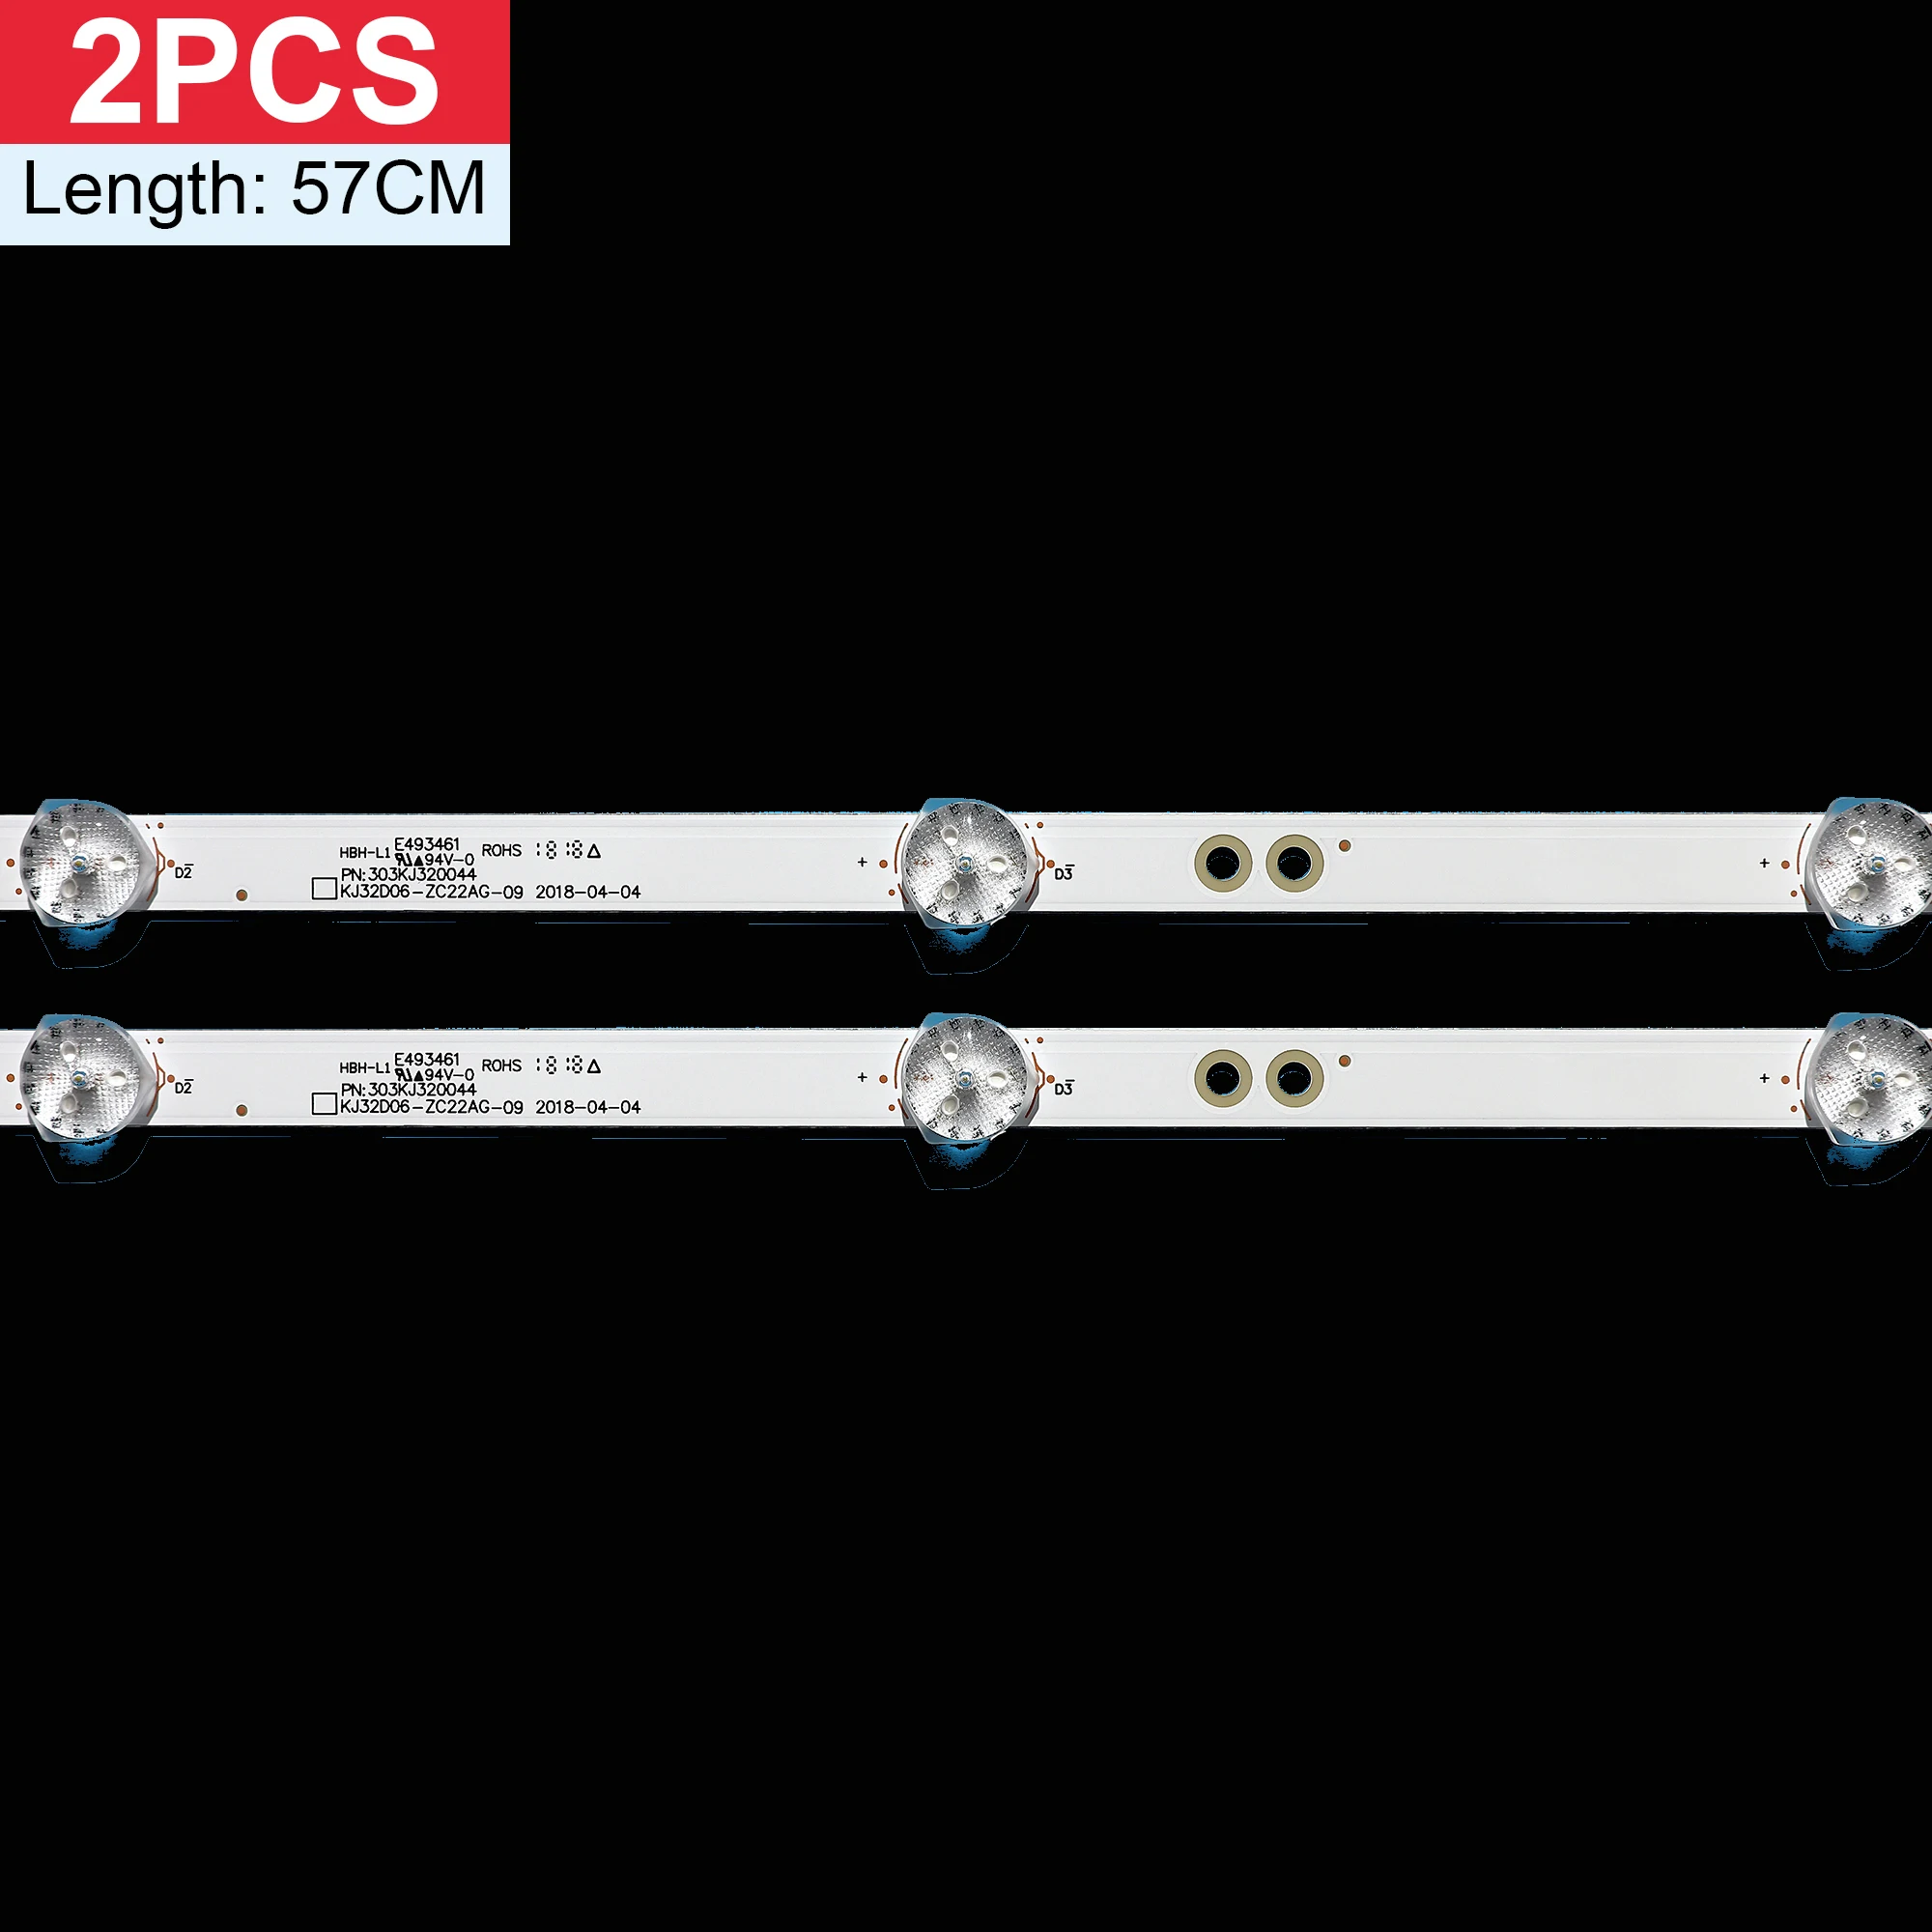 

LED Backlight strip 6 lamp For KJ32D06-ZC22AG-09 12 20E 303KJ320044 KM0320LDCH 32LH0202 32HH1830 HTV-32R01-T2C/A4/B V320BJ6-Q01